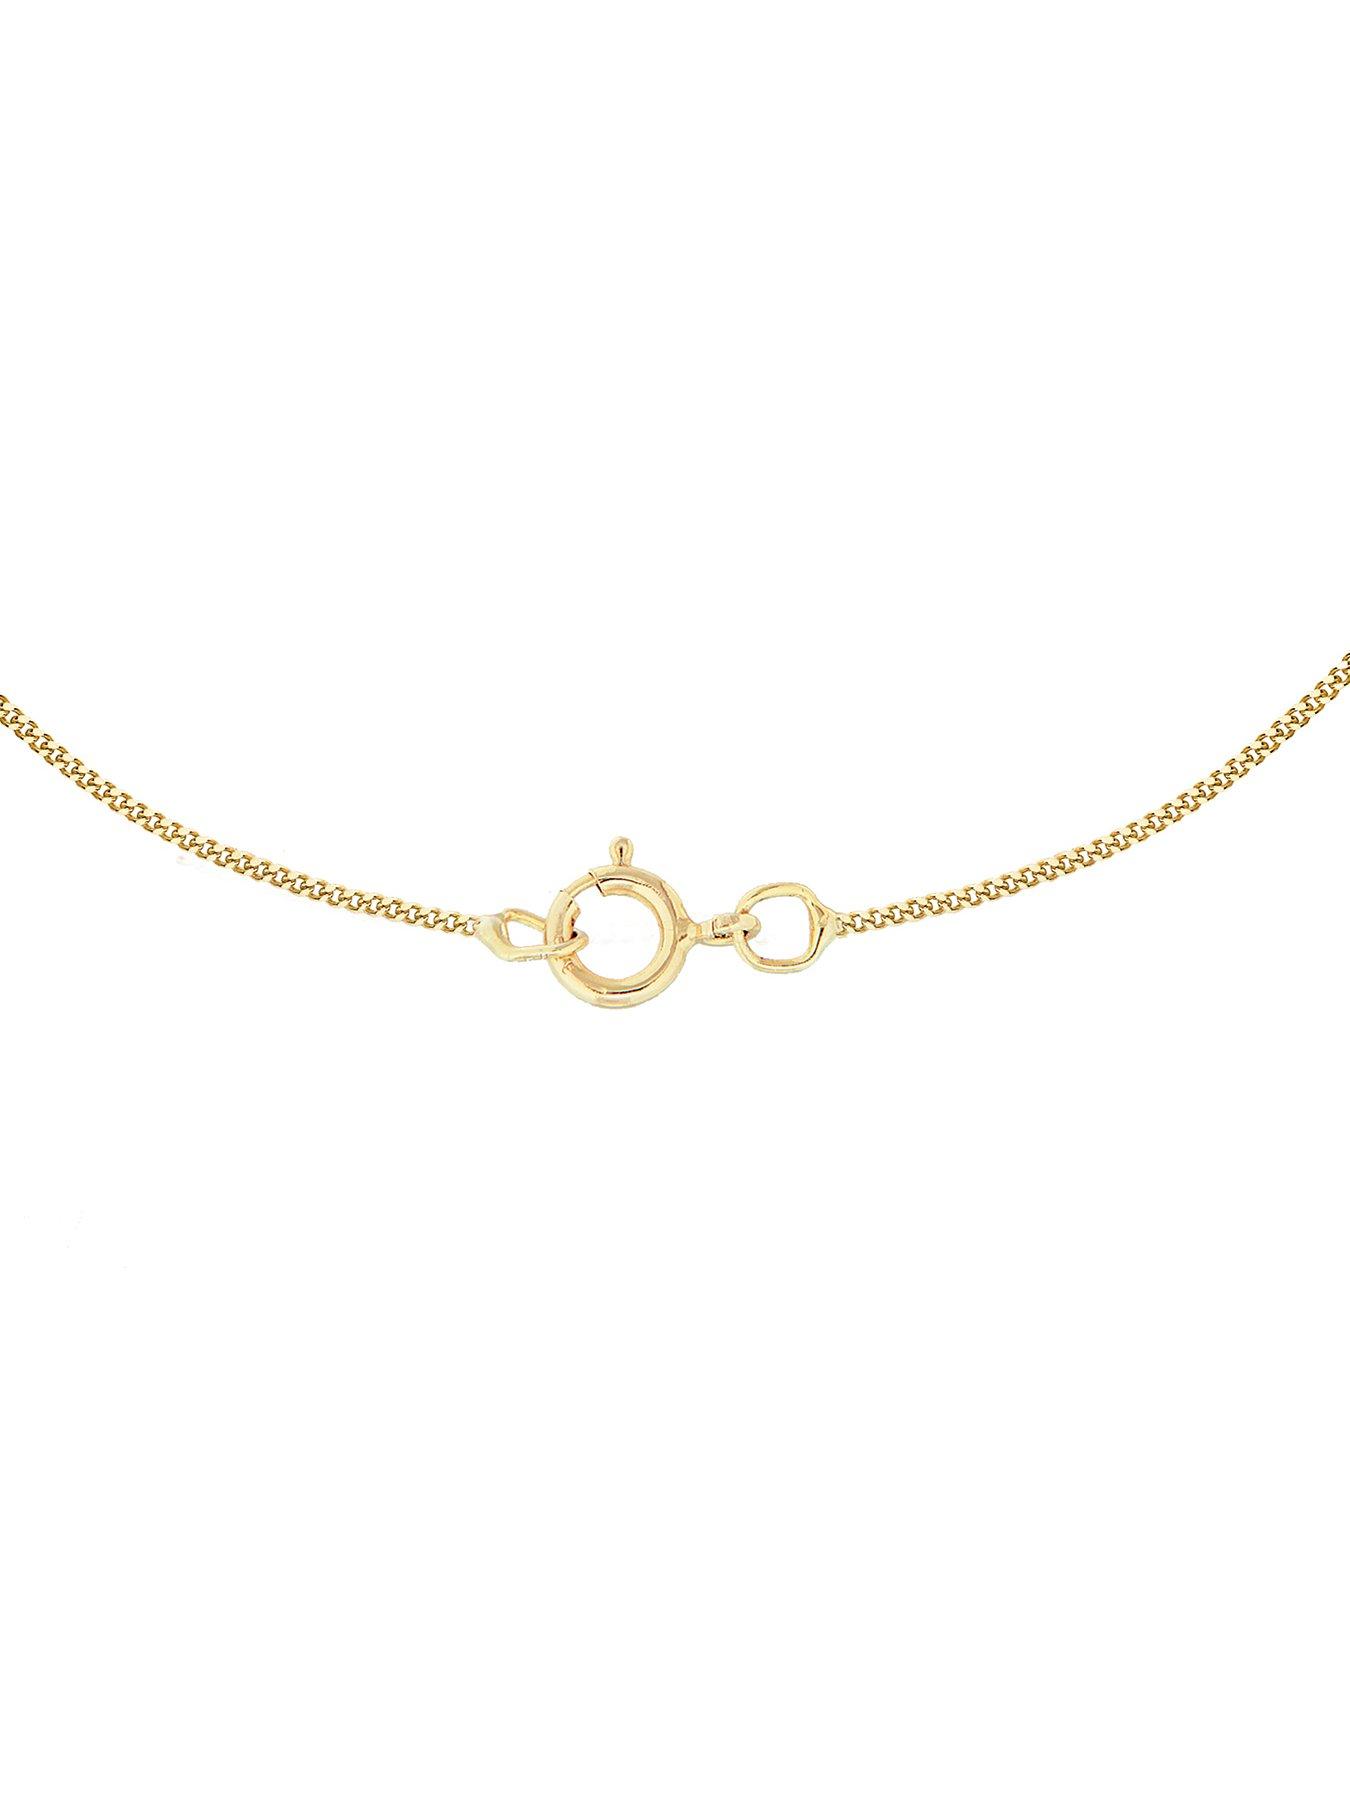 Women 9ct Gold Plain Initial Pendant Pendant Necklace